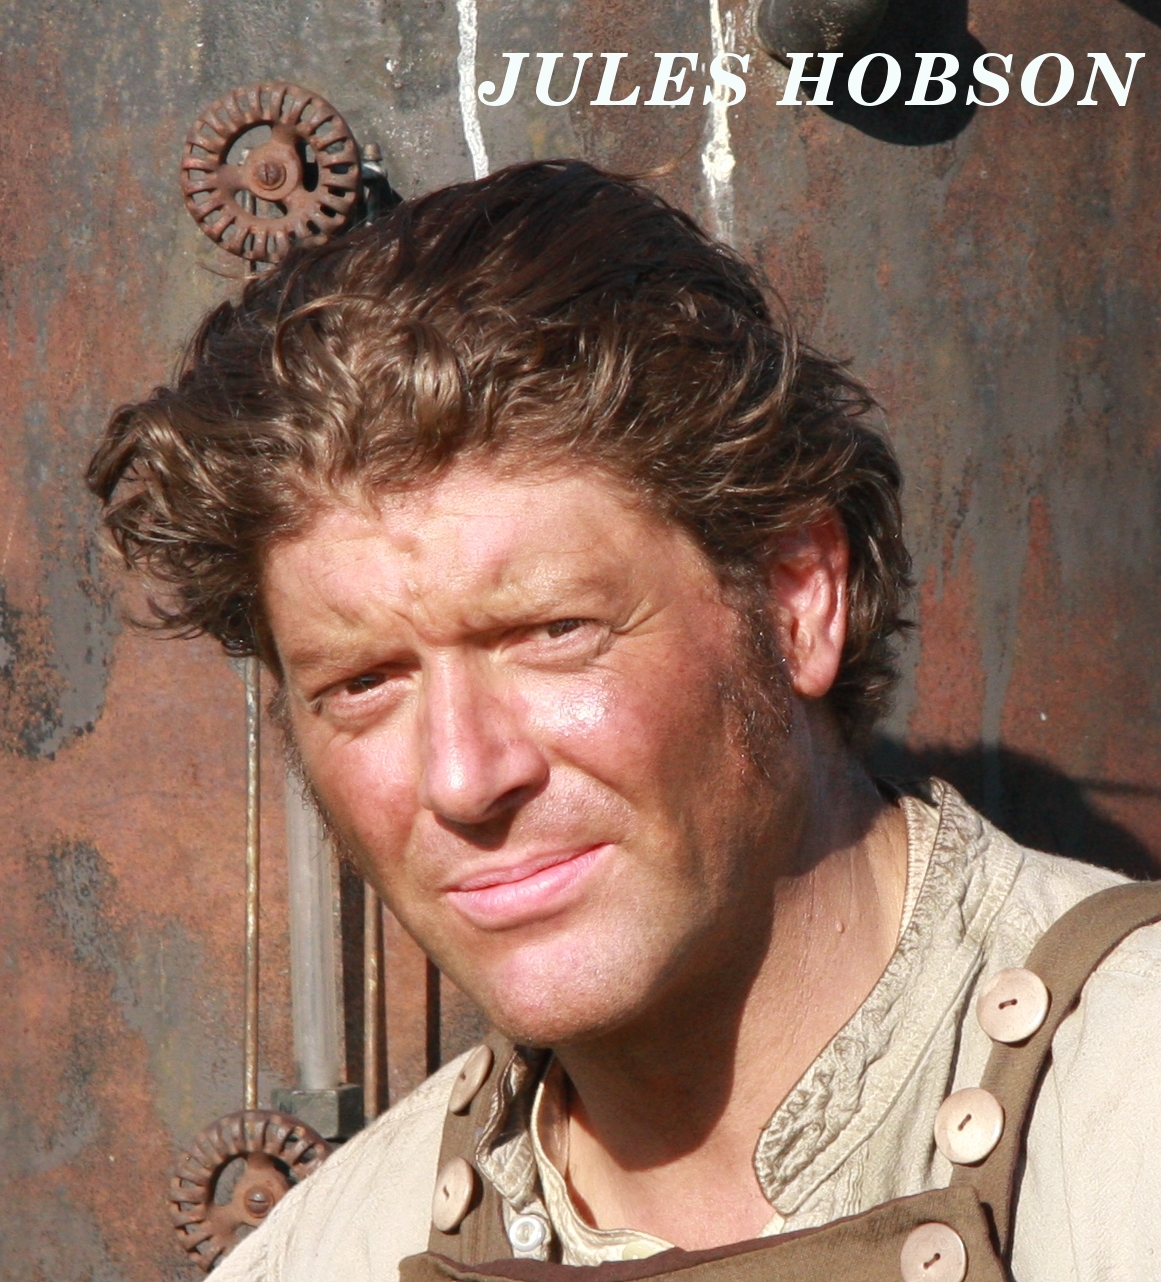 Jules Hobson